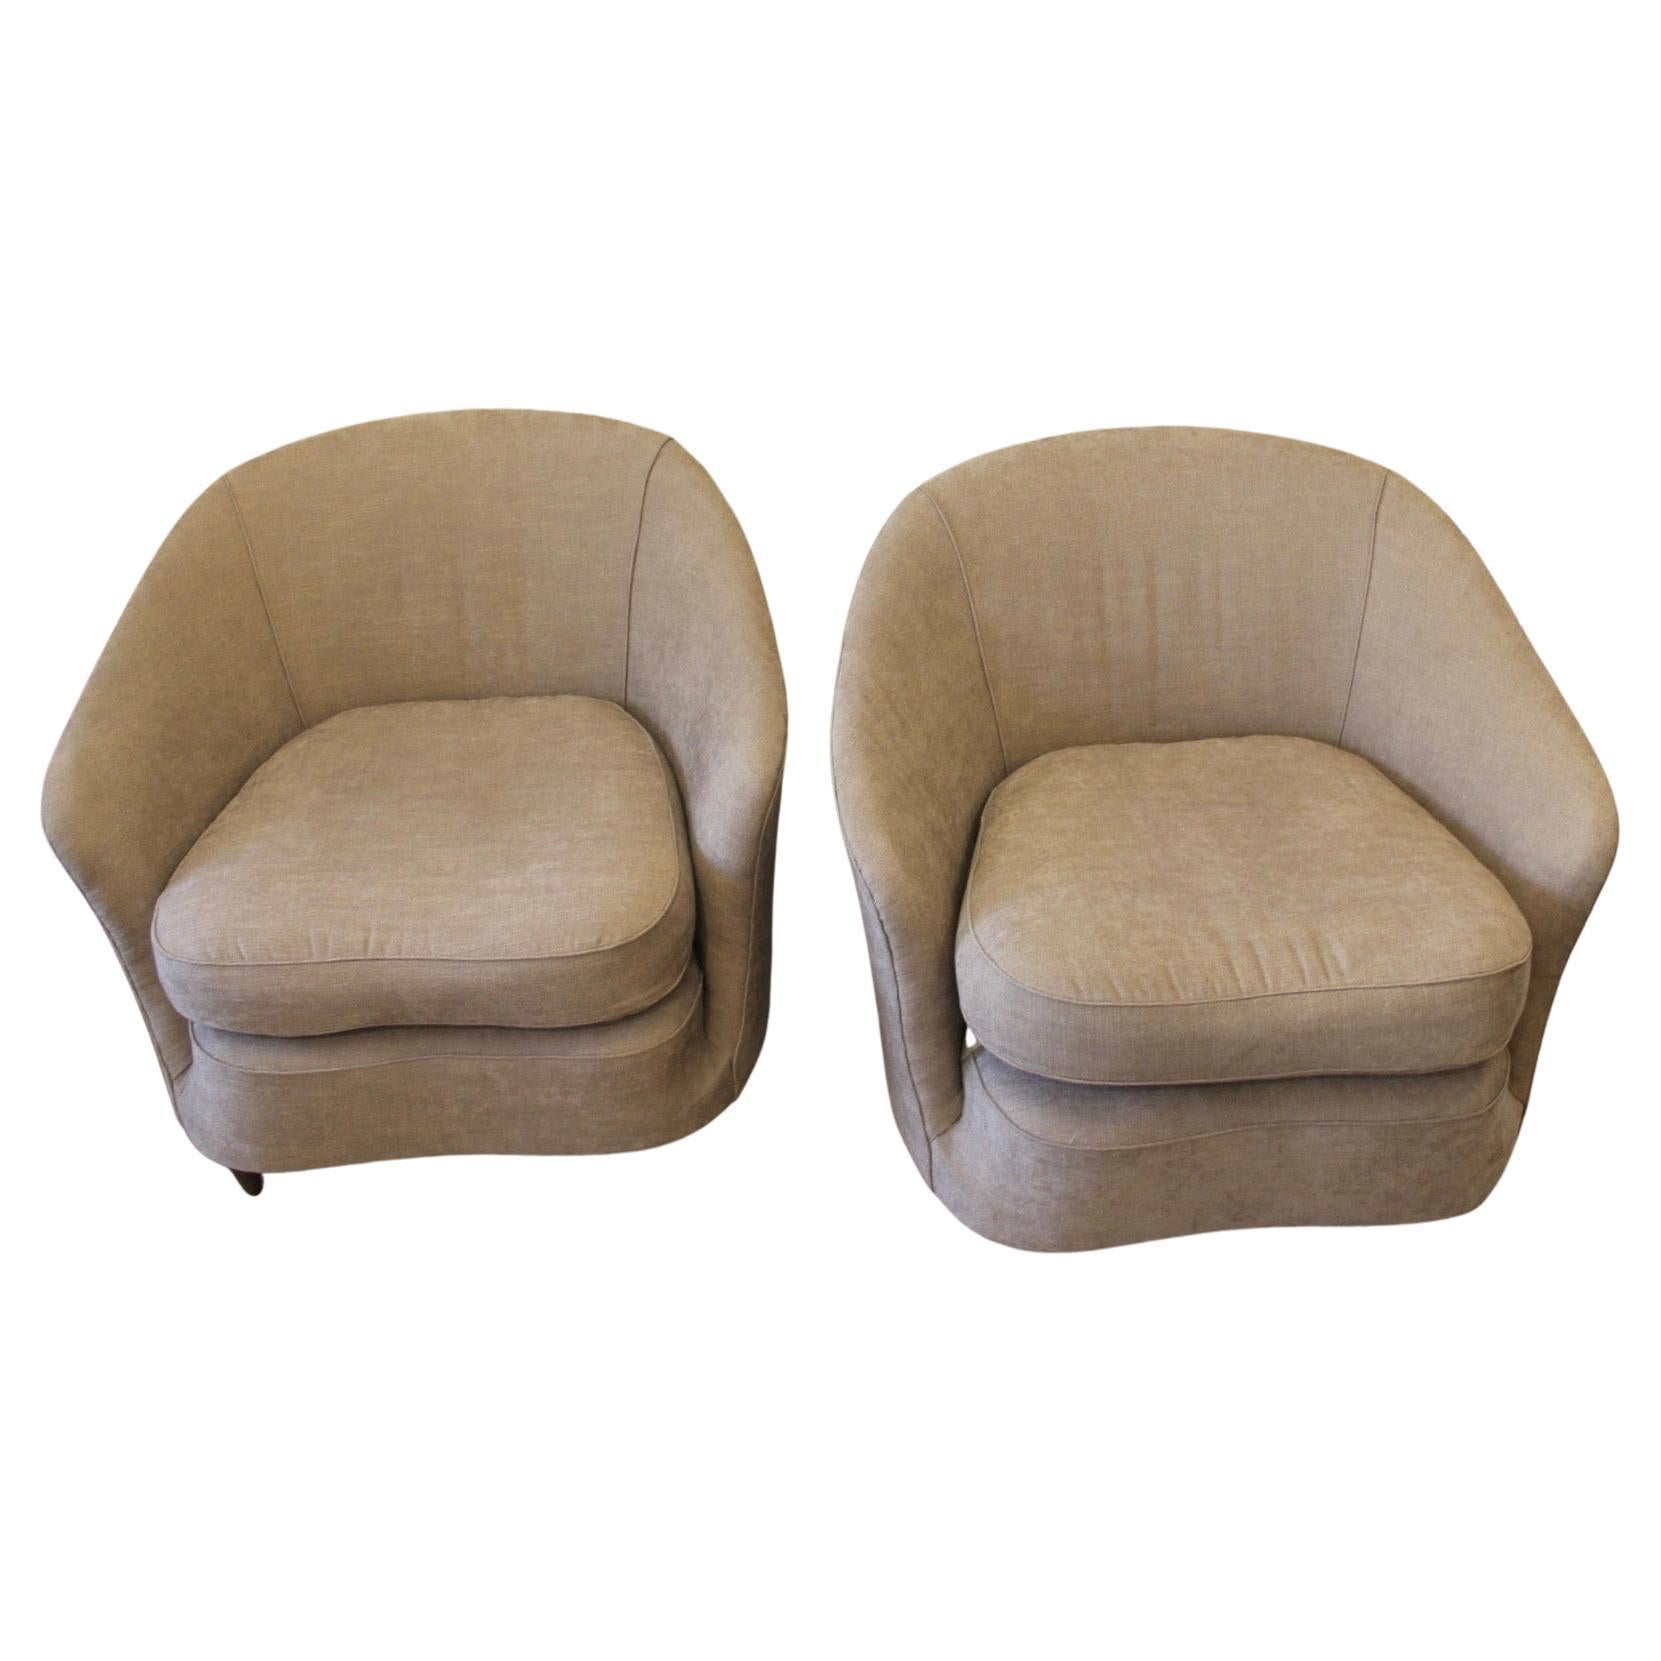 Ein Paar Clubsessel aus den 50er Jahren, italienisch.
Die Polsterung der Sessel wurde mit einem perlengrauen Baumwollstoff bezogen.
Die Füße sind hölzern.
Modell eines sehr attraktiven Sessels.